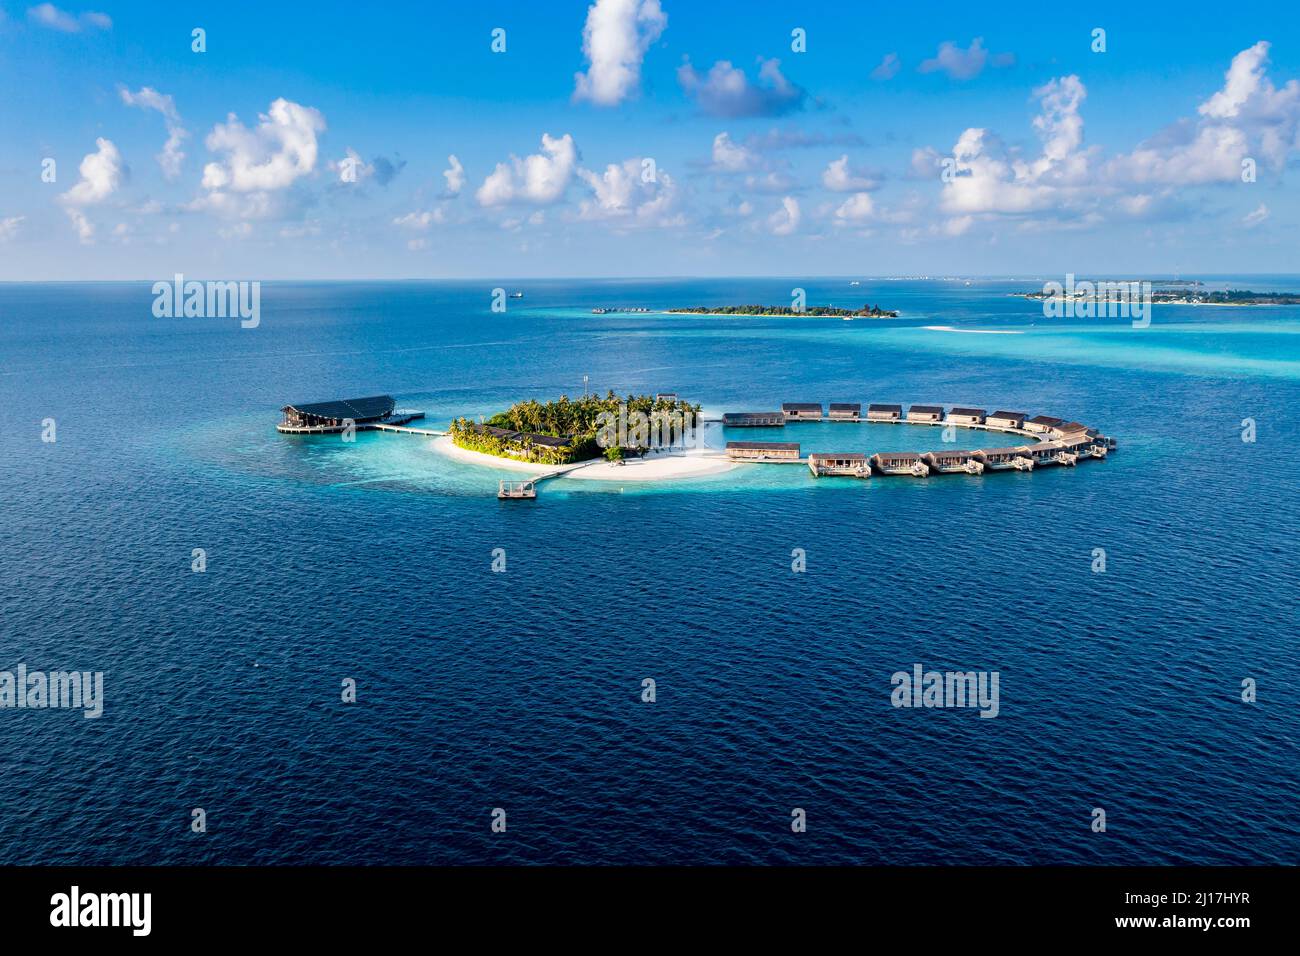 Bungalows rodeados de vistas azules al mar en la isla Kudadoo, Maldivas Foto de stock